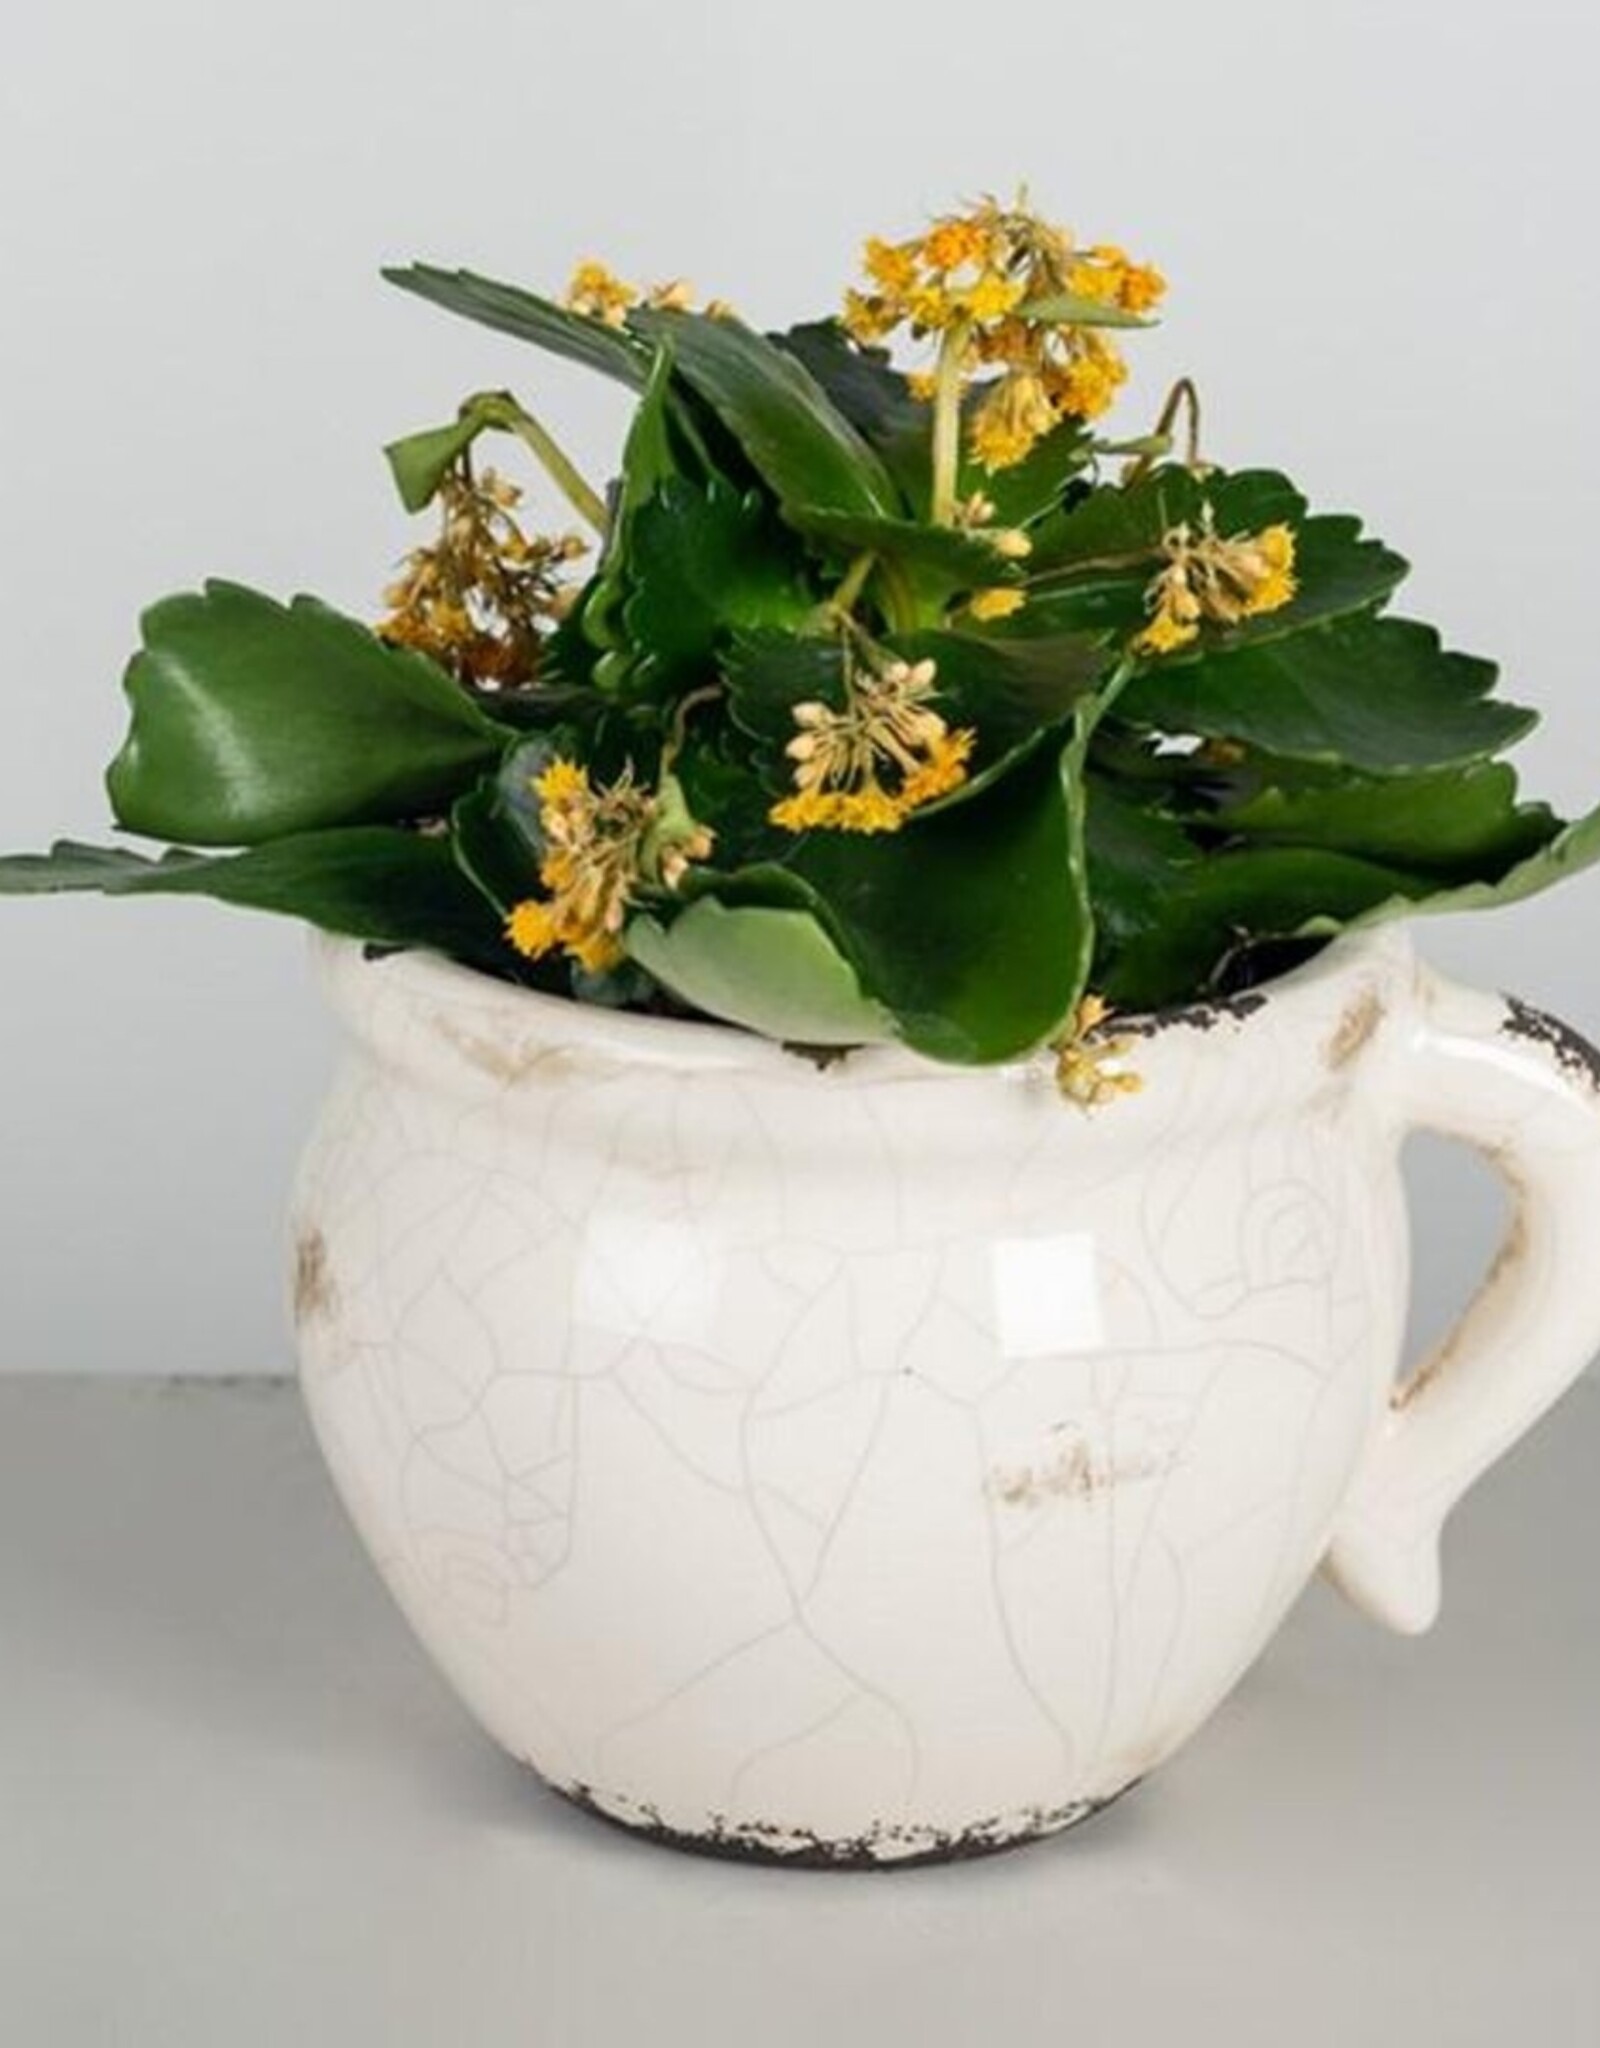 Forpost Trade Glazed Ceramic Flower Pot, Lrg